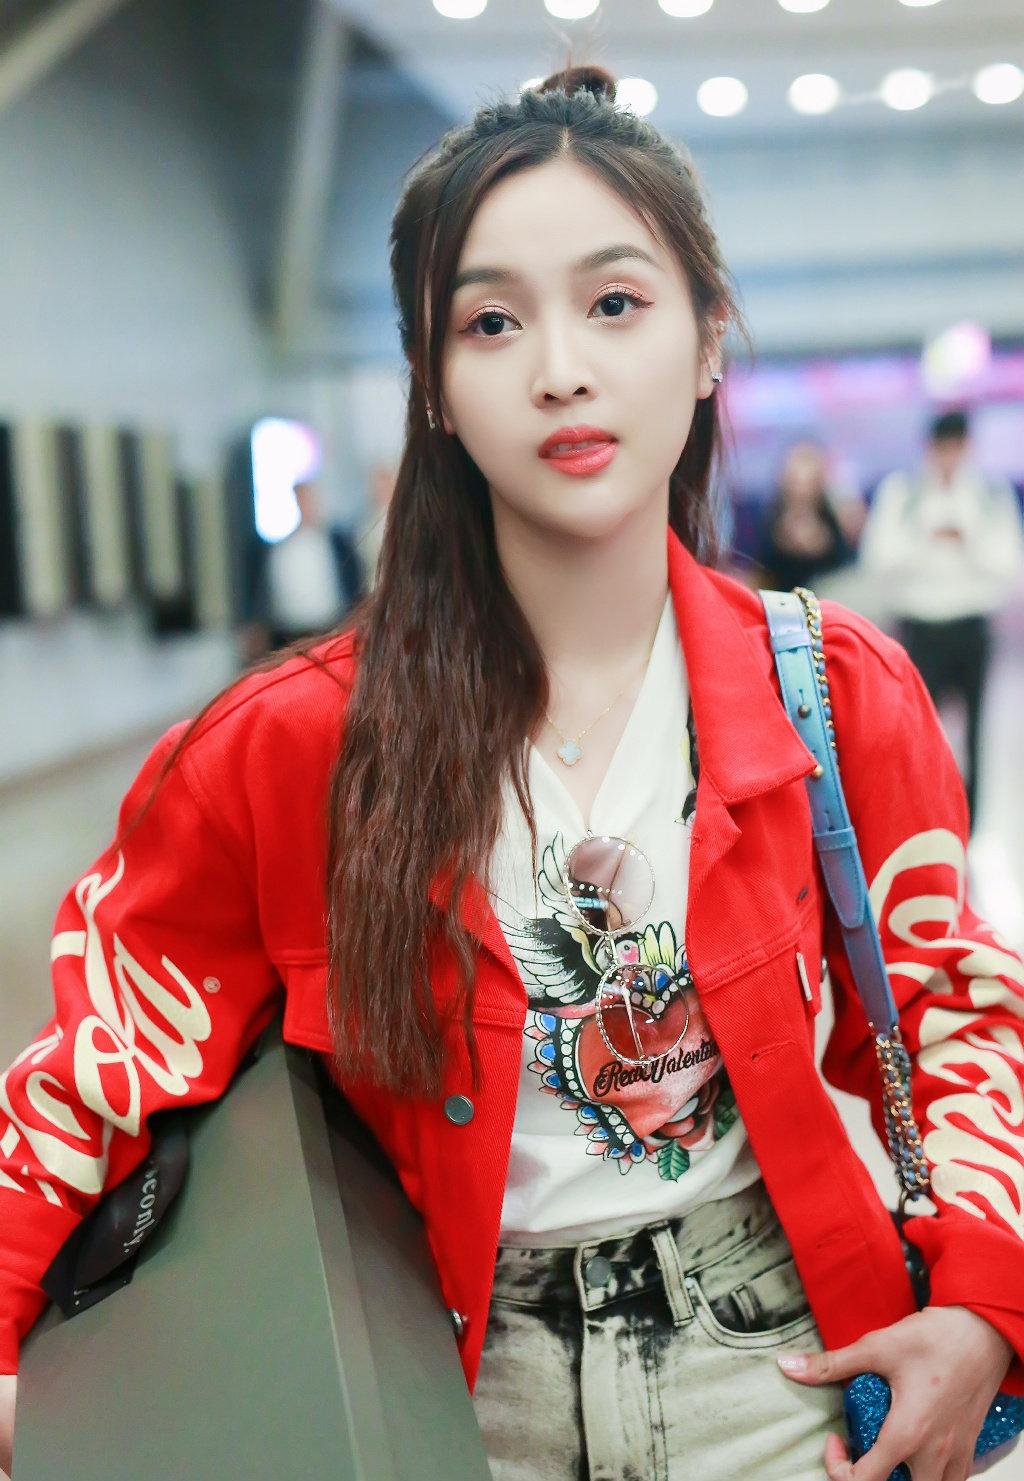 火箭少女101成员吴宣仪红衣时尚甜美机场街拍照